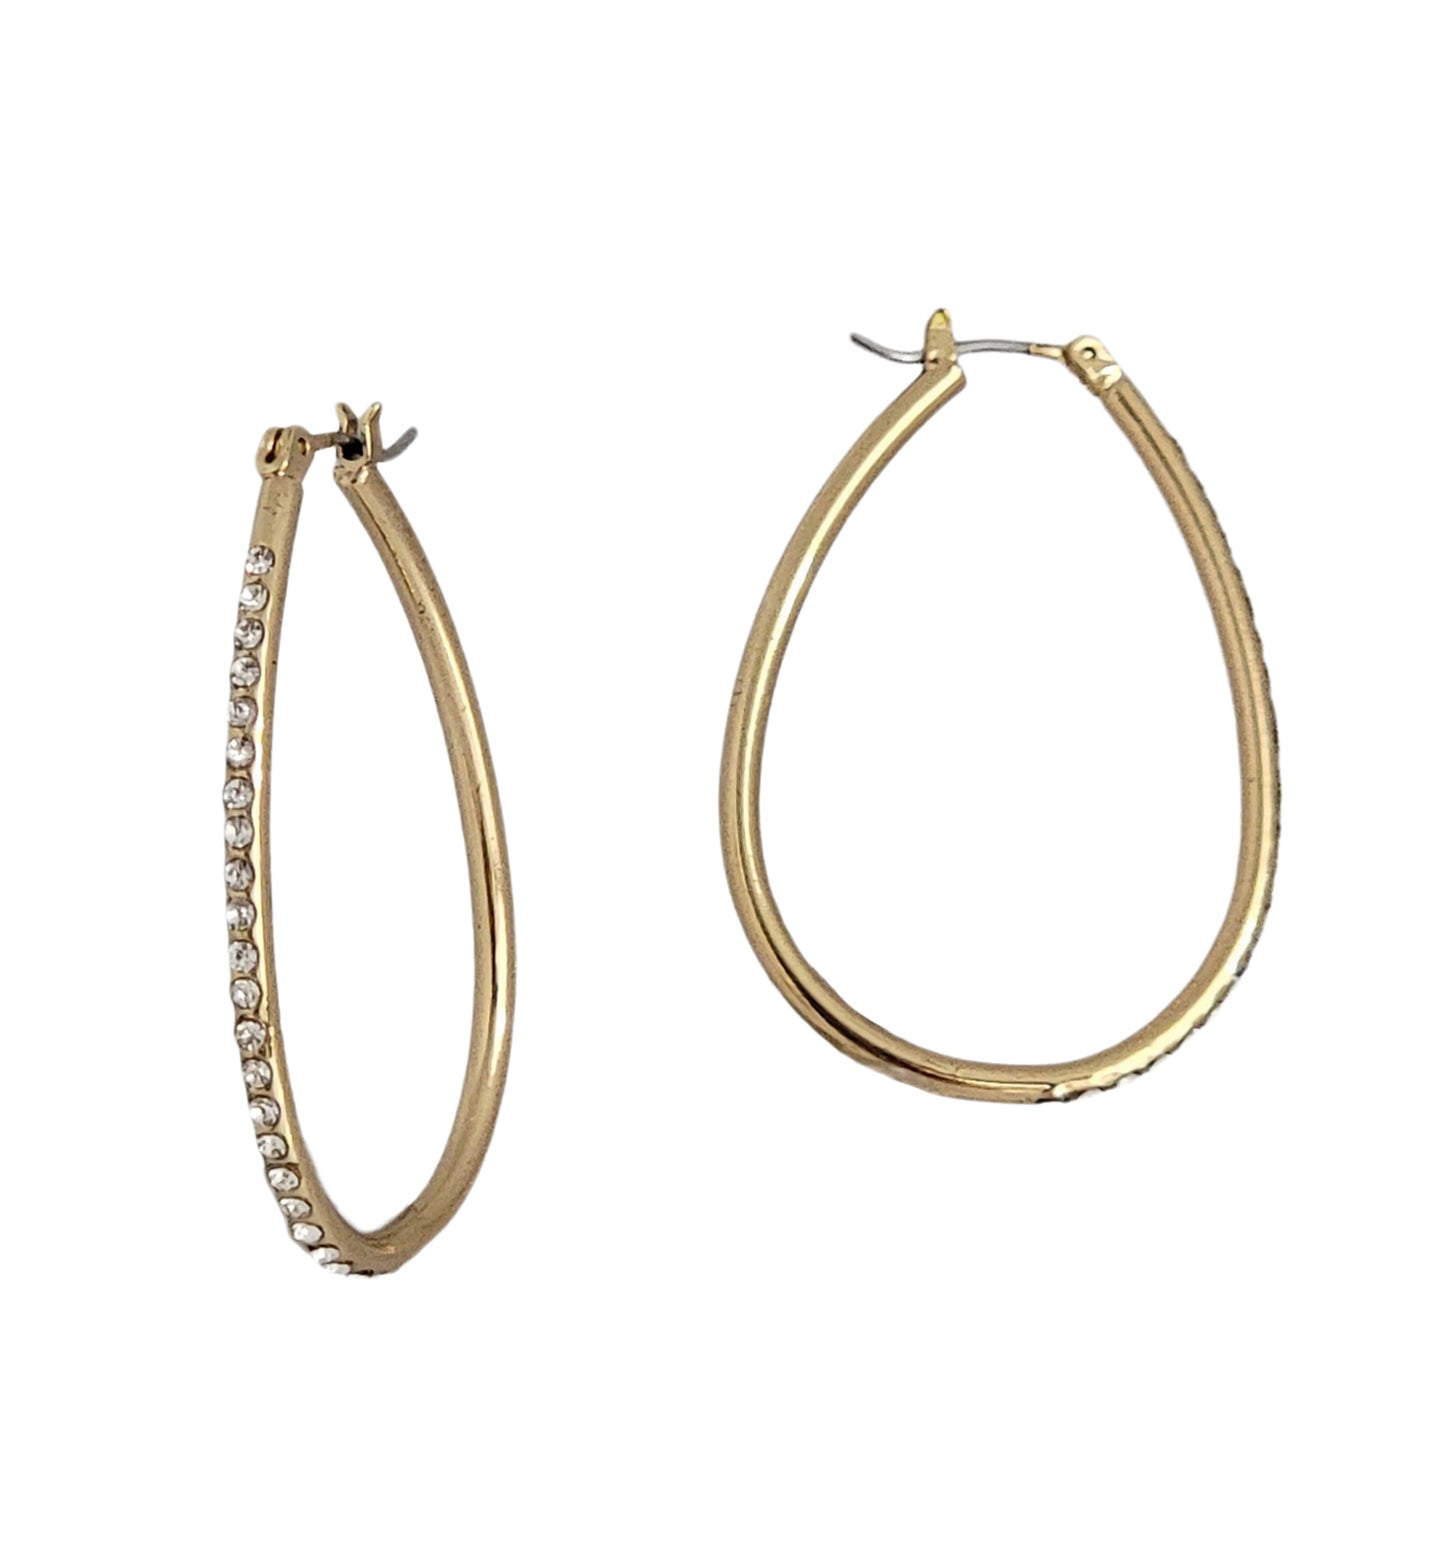 Ladies Gold Tone Loop Hoop Crystal Studded Pierced Earrings - Gift Boxed